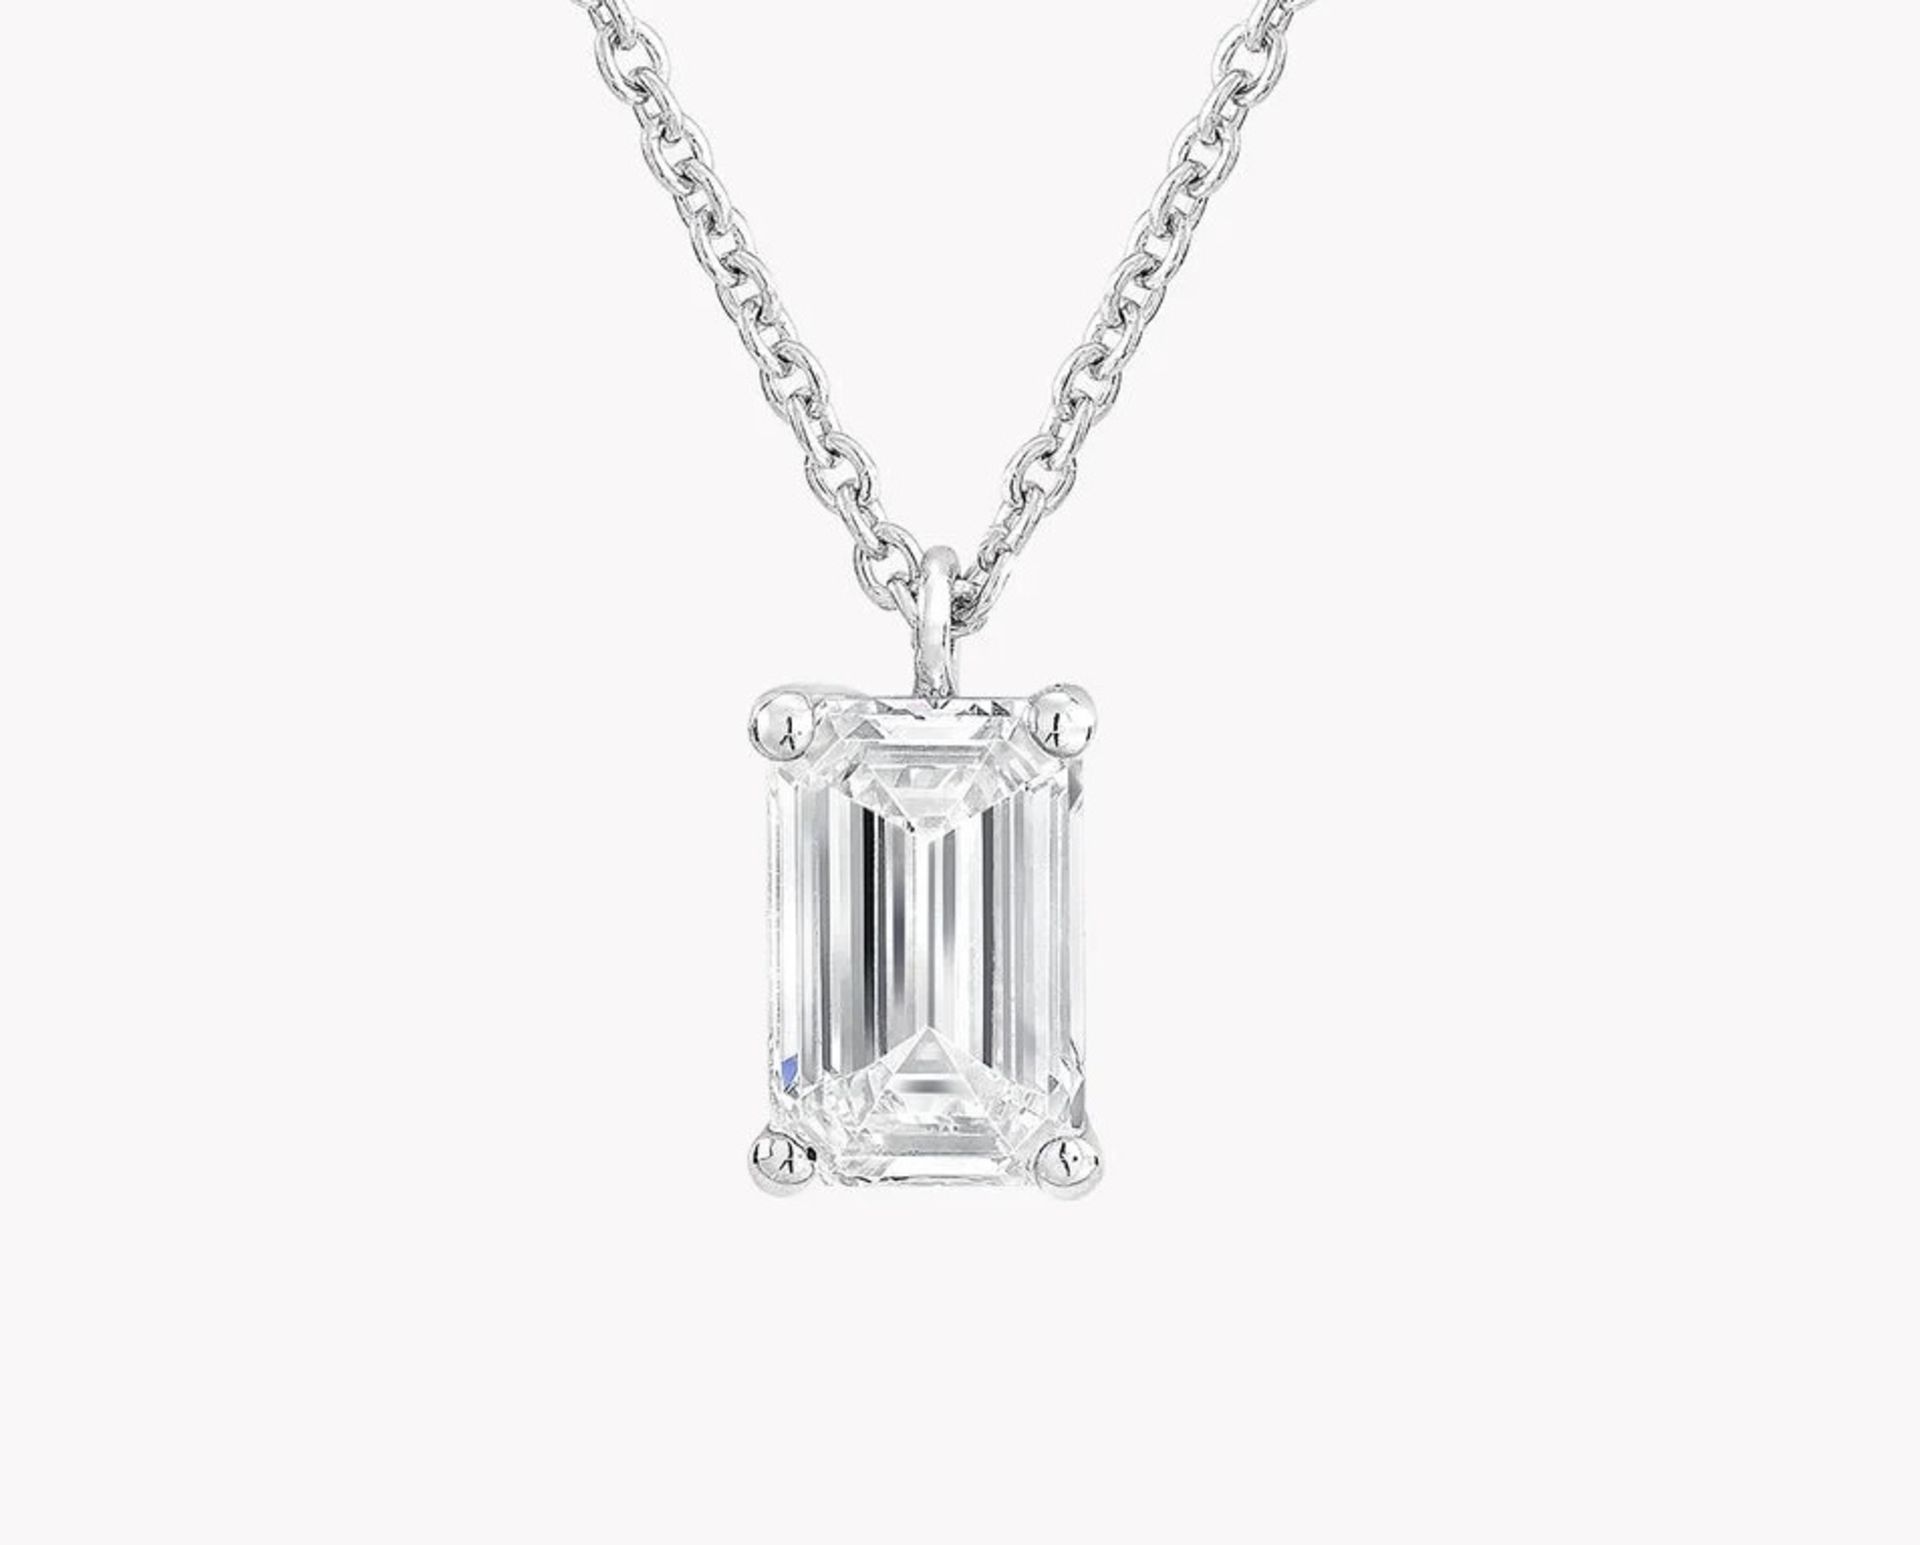 Emerald Cut Diamond 1.00 Carat D Colour VS1 Clarity - Necklace Pendant - 18kt White Gold